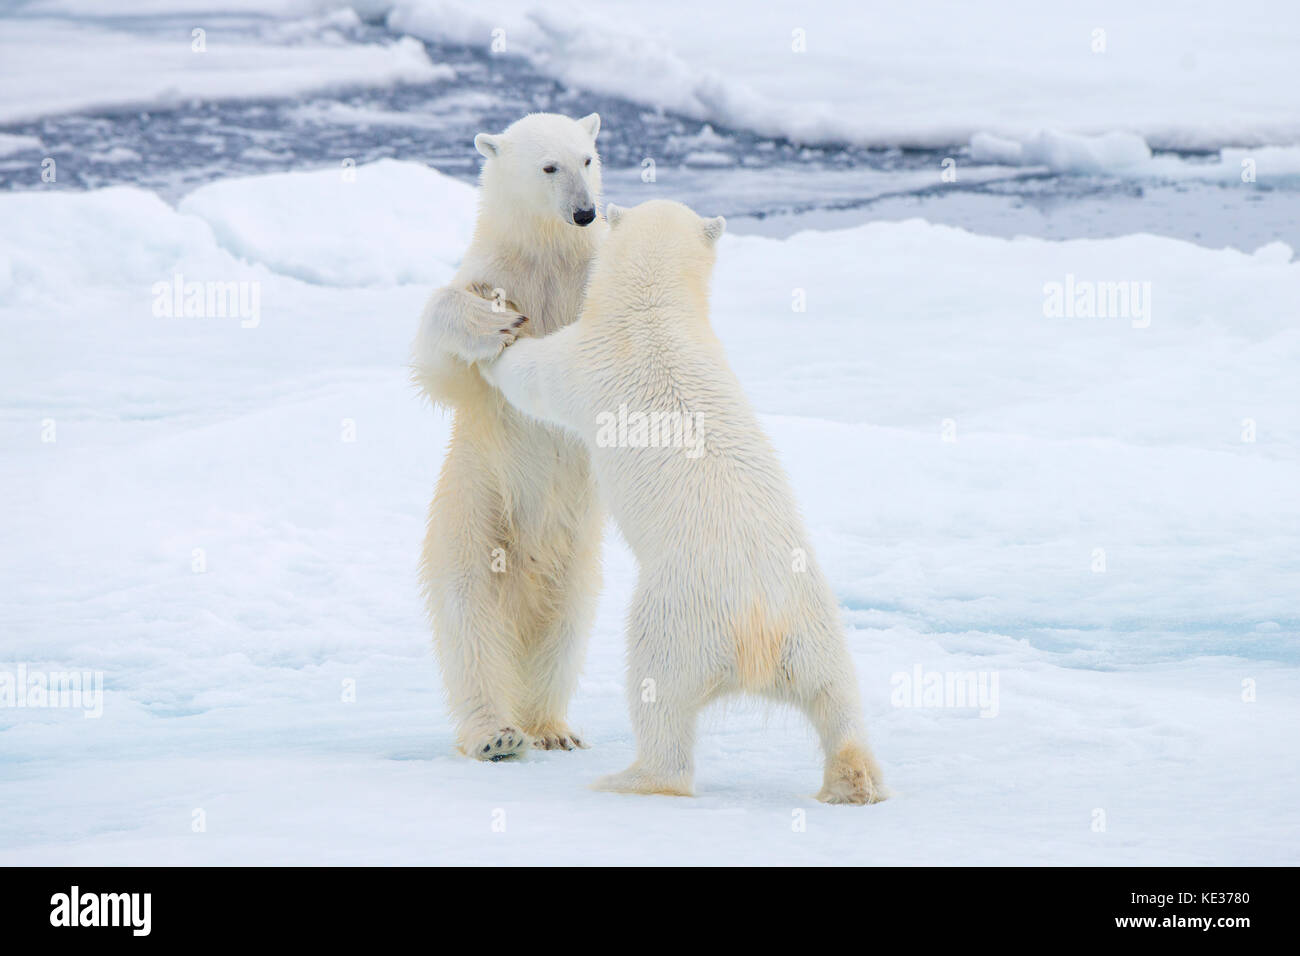 Nach weiblichen Eisbären (Ursus maritimus) Interaktion auf dem Meereis, Svalbard, Das arktische Norwegen Stockfoto